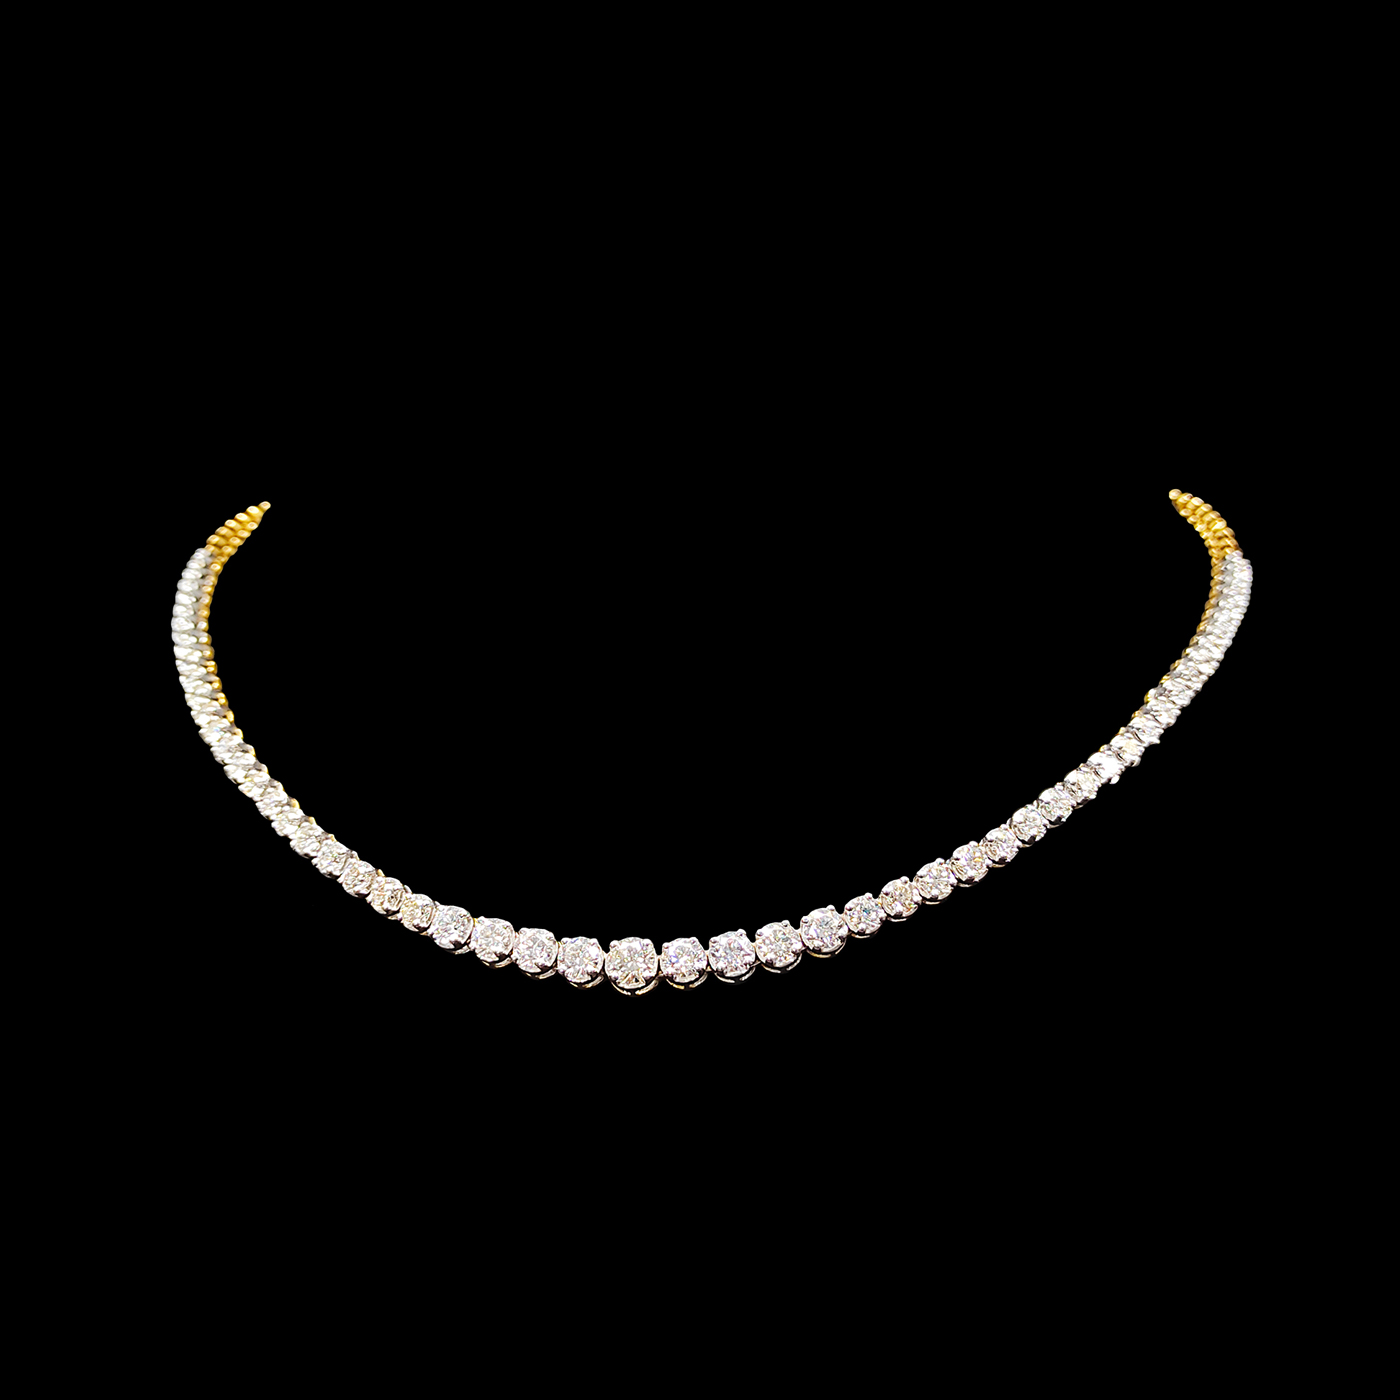 Single Line Diamond Necklace